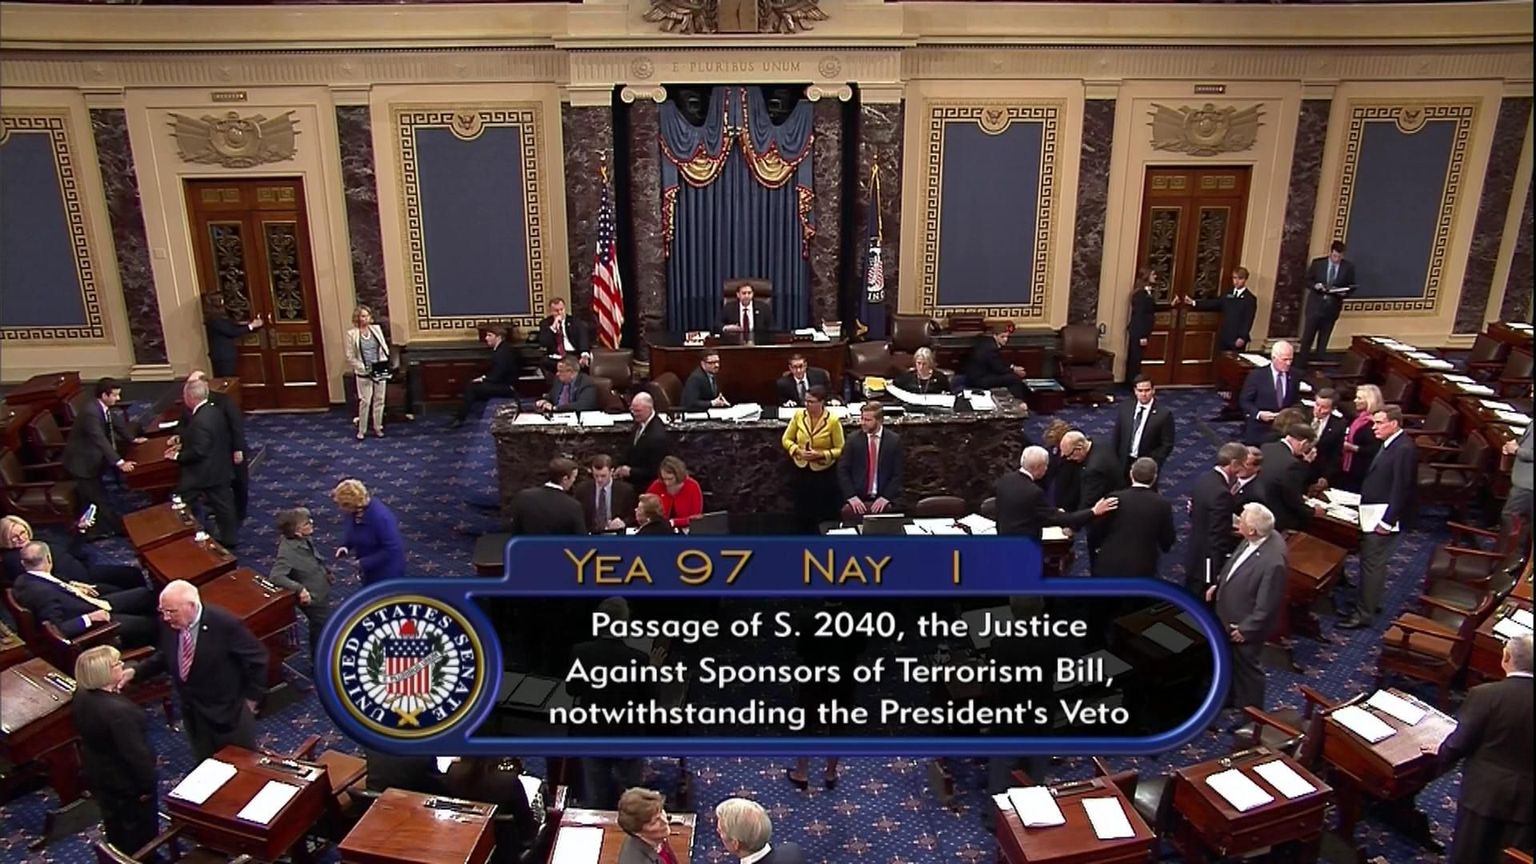 USA senatis pooldas riigipea veto tühistamist 97 ja vastu oli üks senaator.